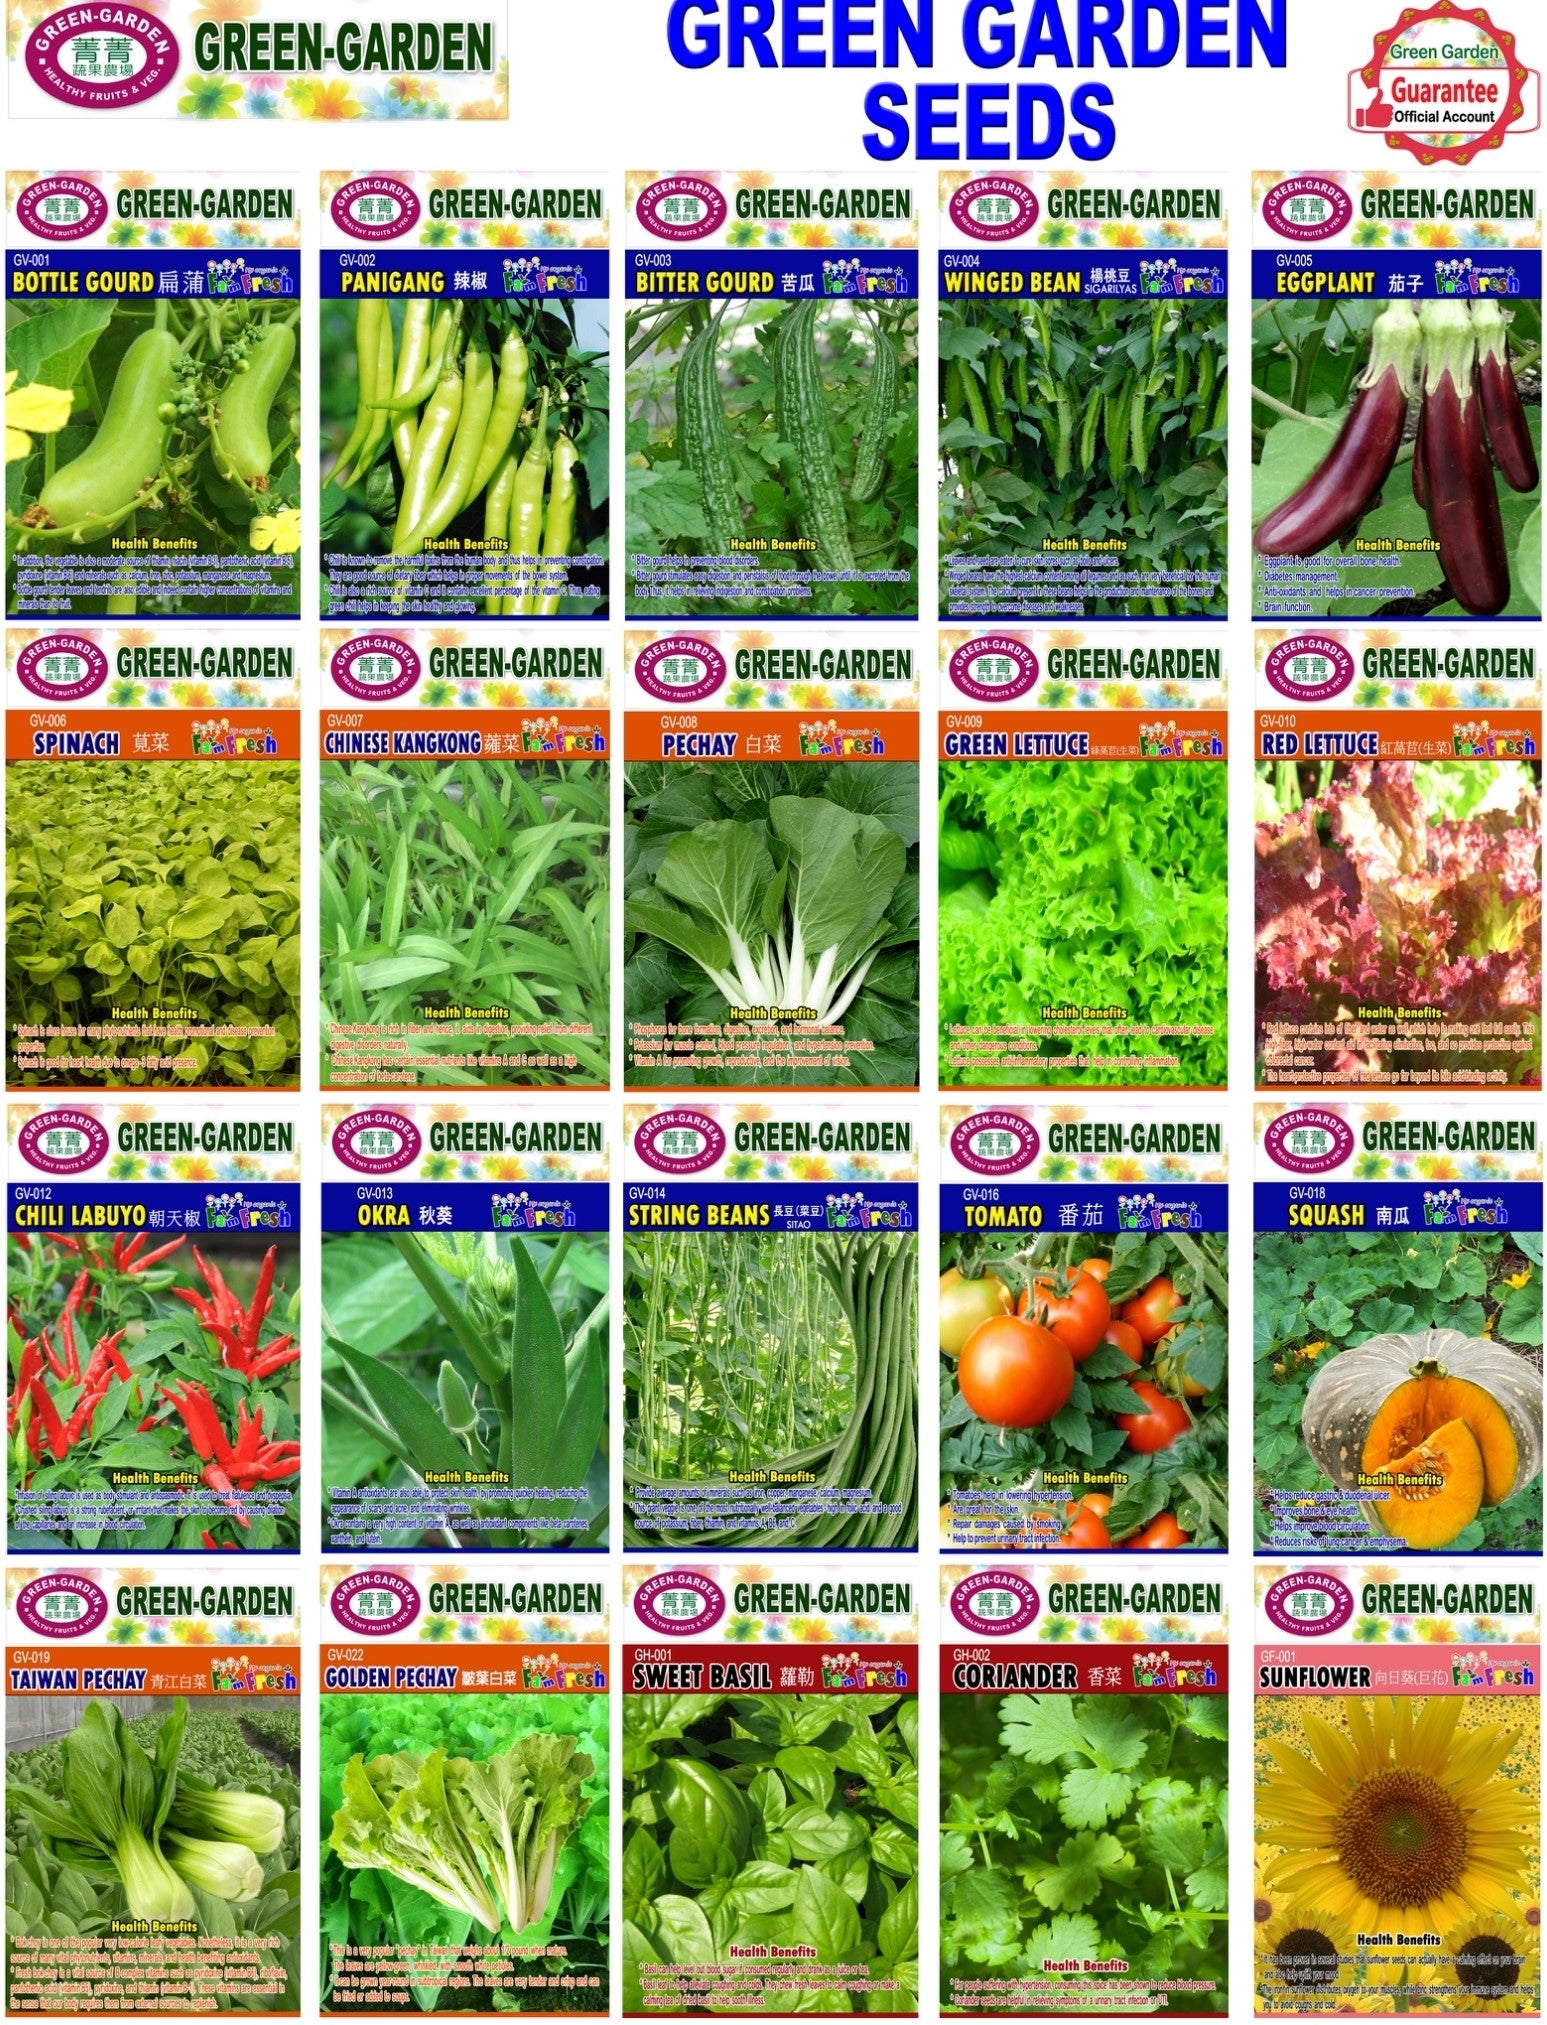 Green Garden Vegetable Seeds (GV-009 Green Lettuce)